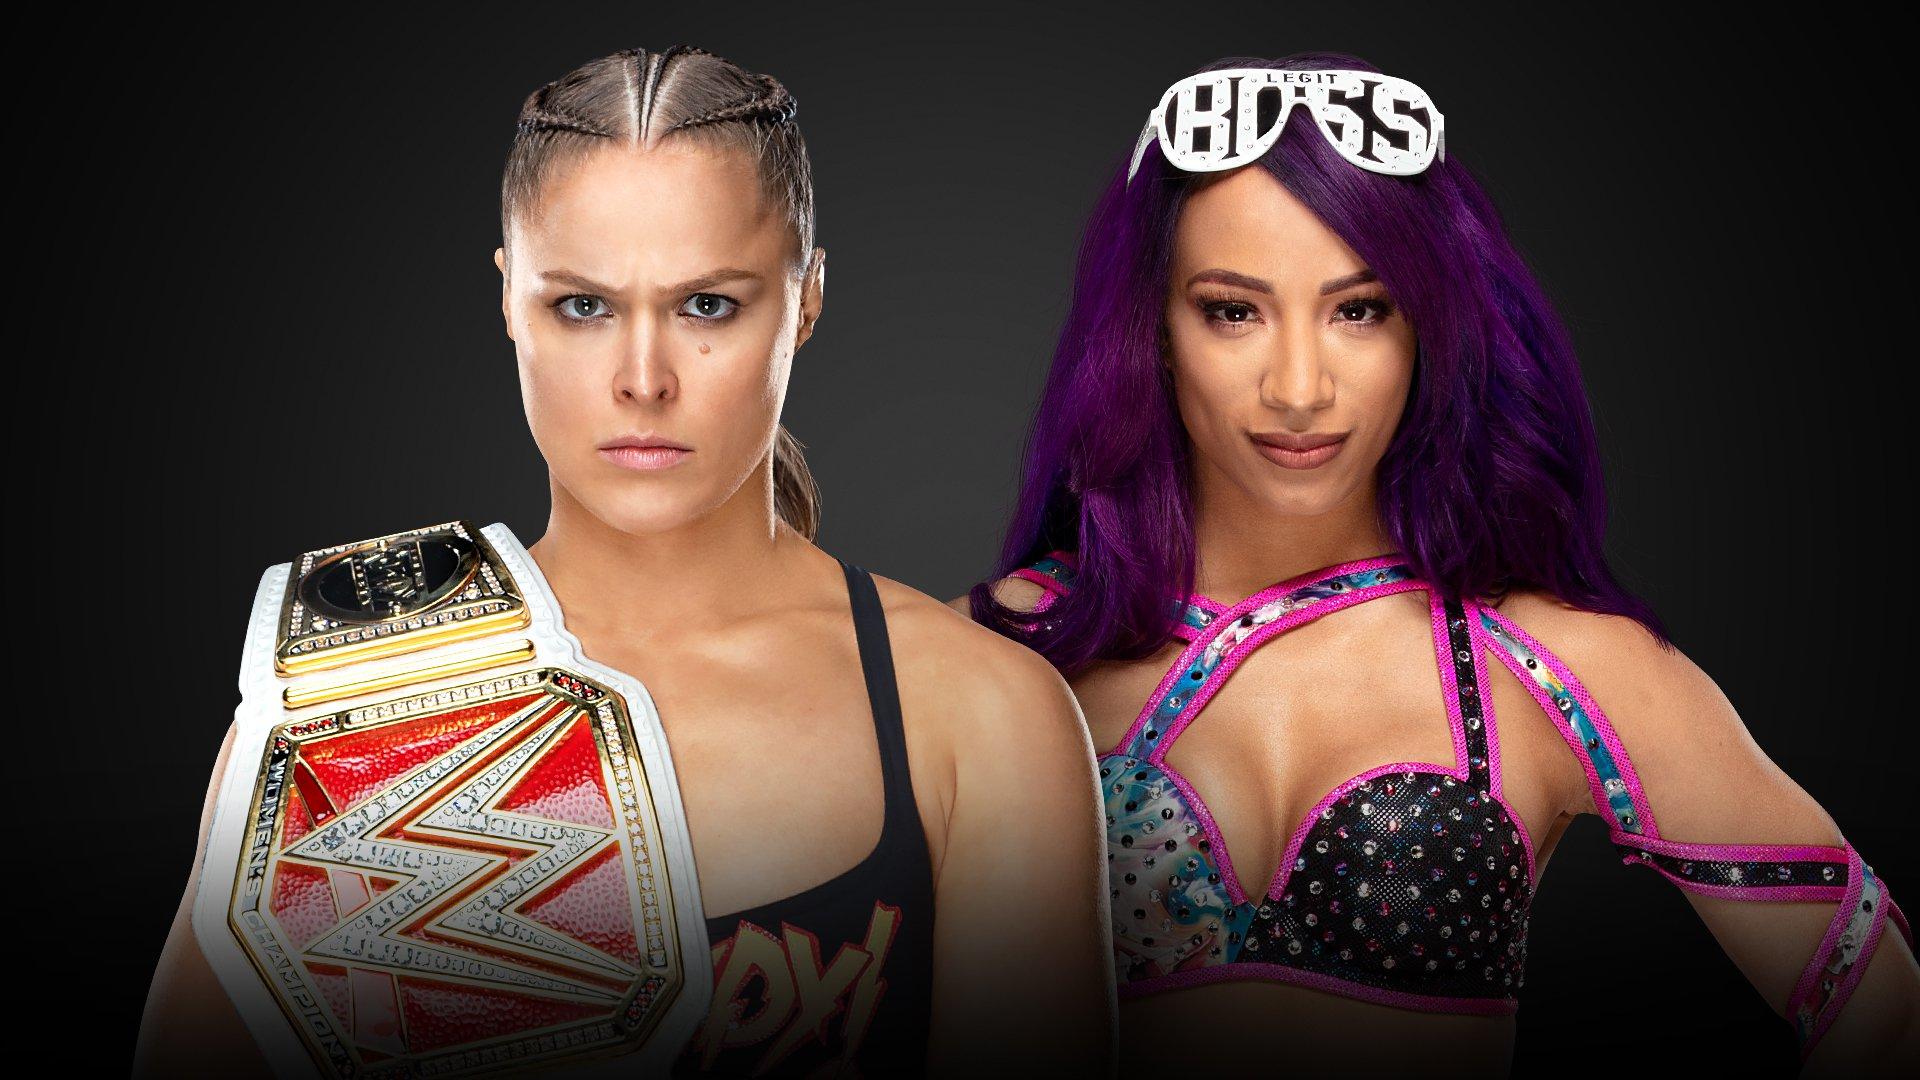 Wwe Royal Rumble Ronda Rousey Defenderá Su Título Ante Sasha Banks Video Fotos Deportes